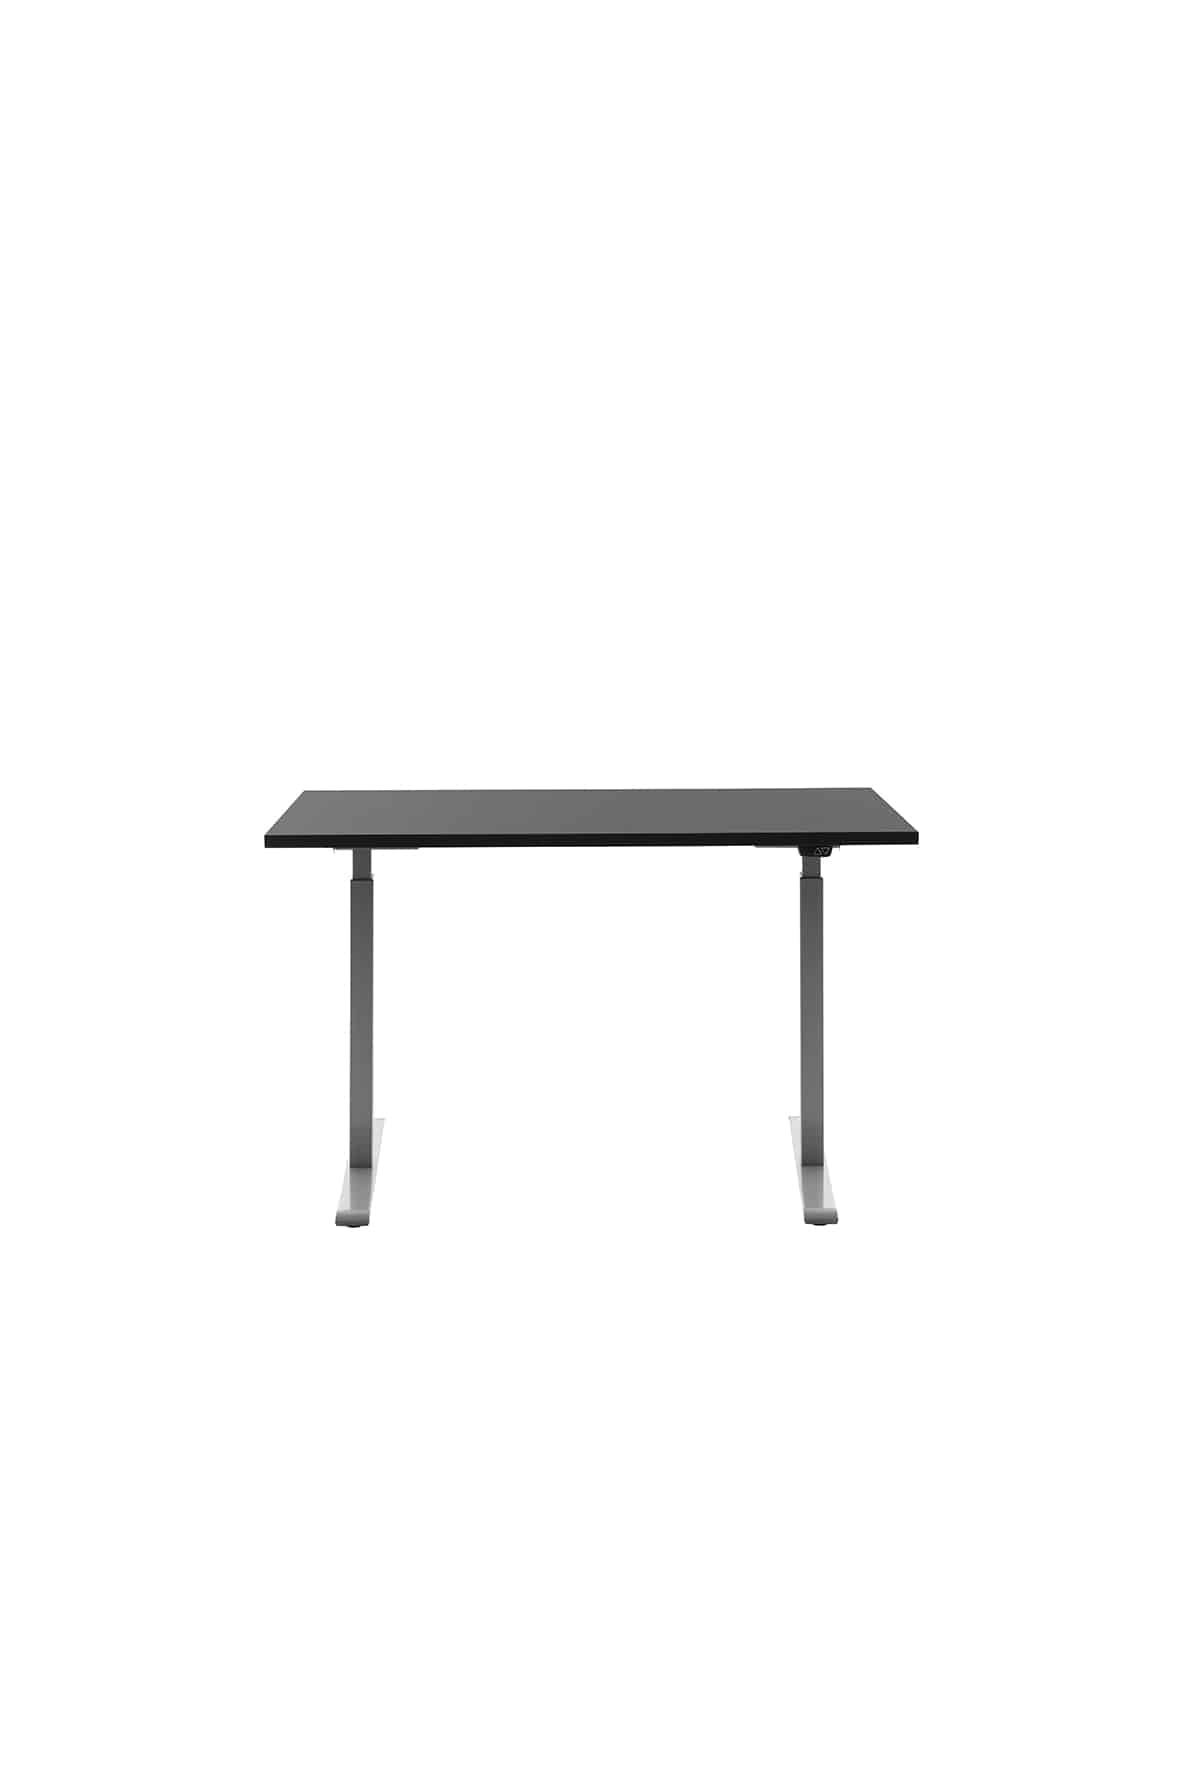 Höhenverstellbarer Schreibtisch 120x60cm, Gestell grau, Platte schwarz